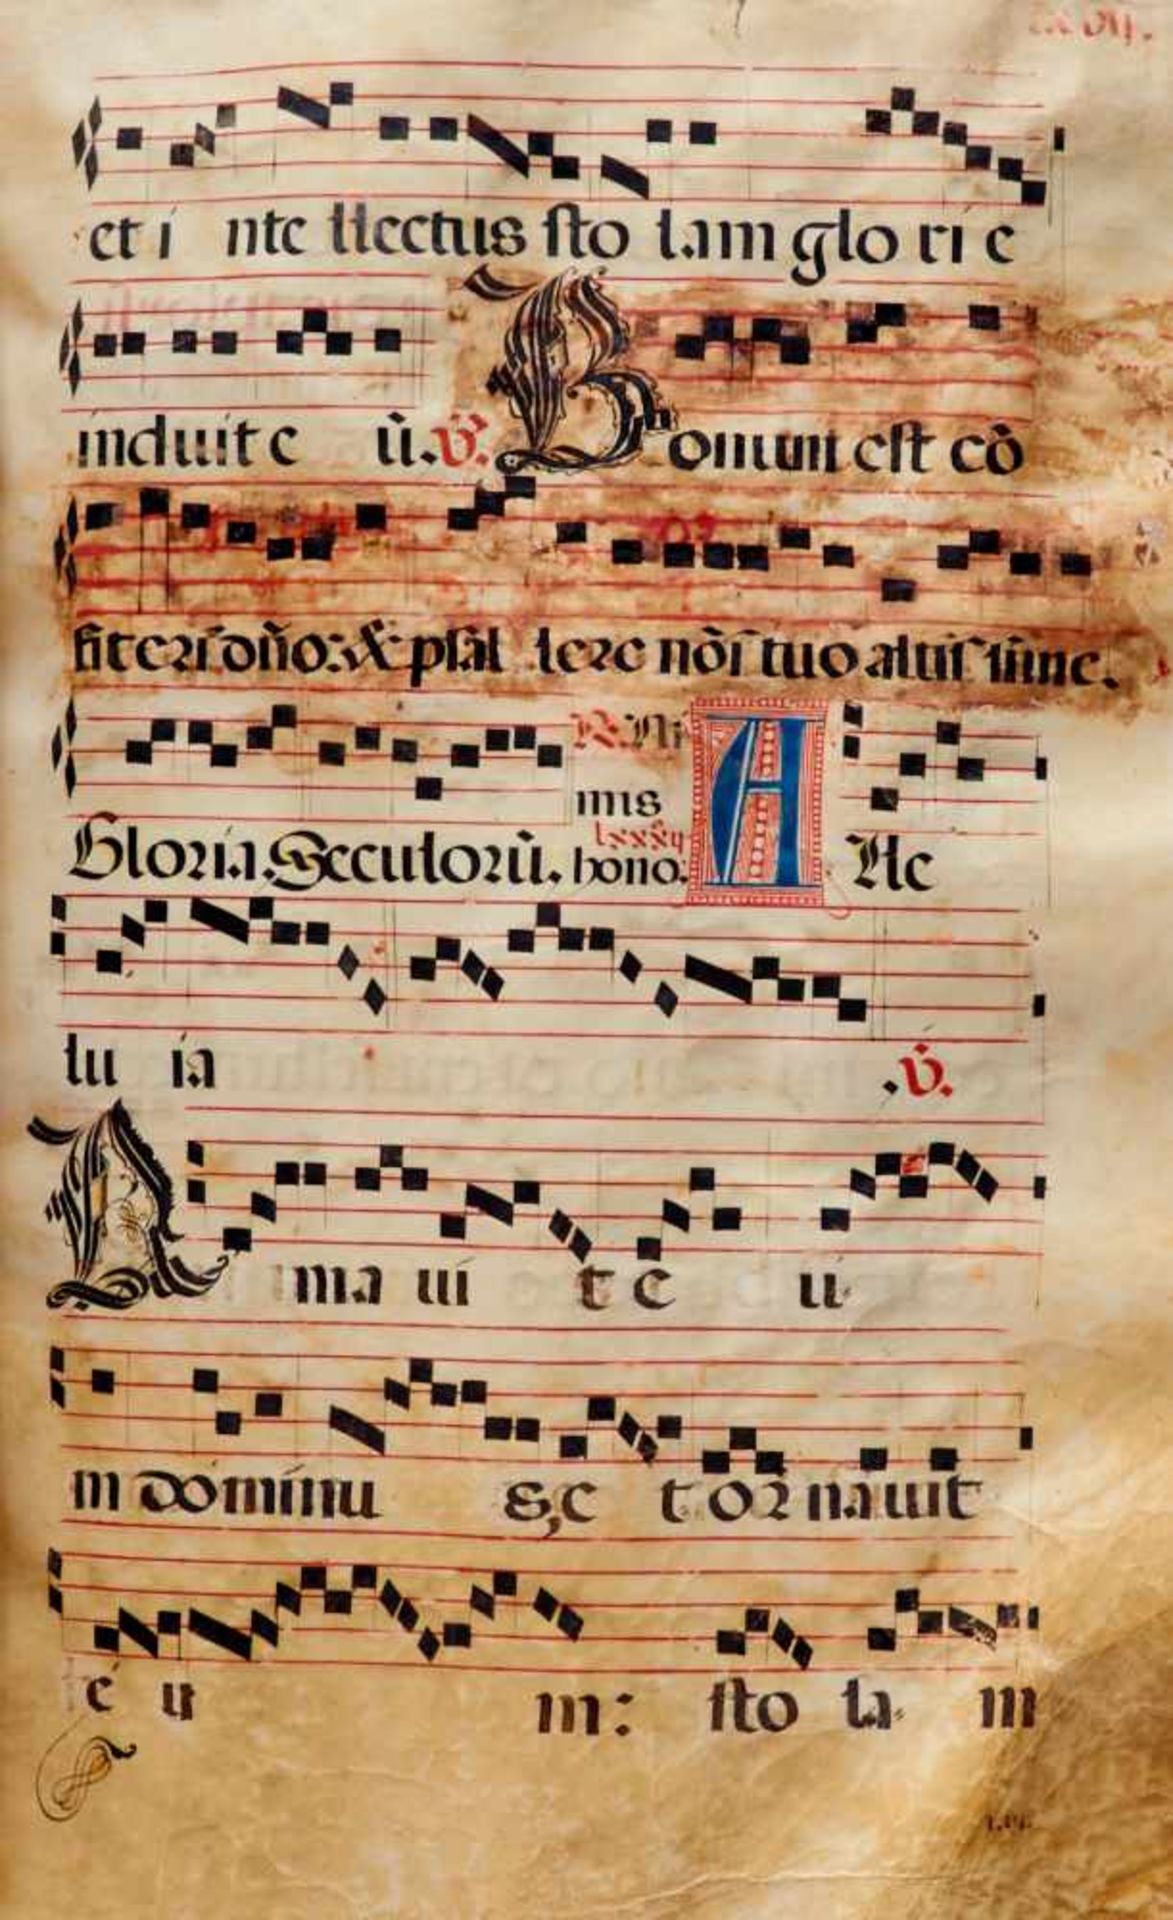 Antiphonar - Lateinische Handschrift auf Pergament. Nicht dat.Wohl Spanien, um 1600. Ca. 50 x 37 cm. - Bild 4 aus 5